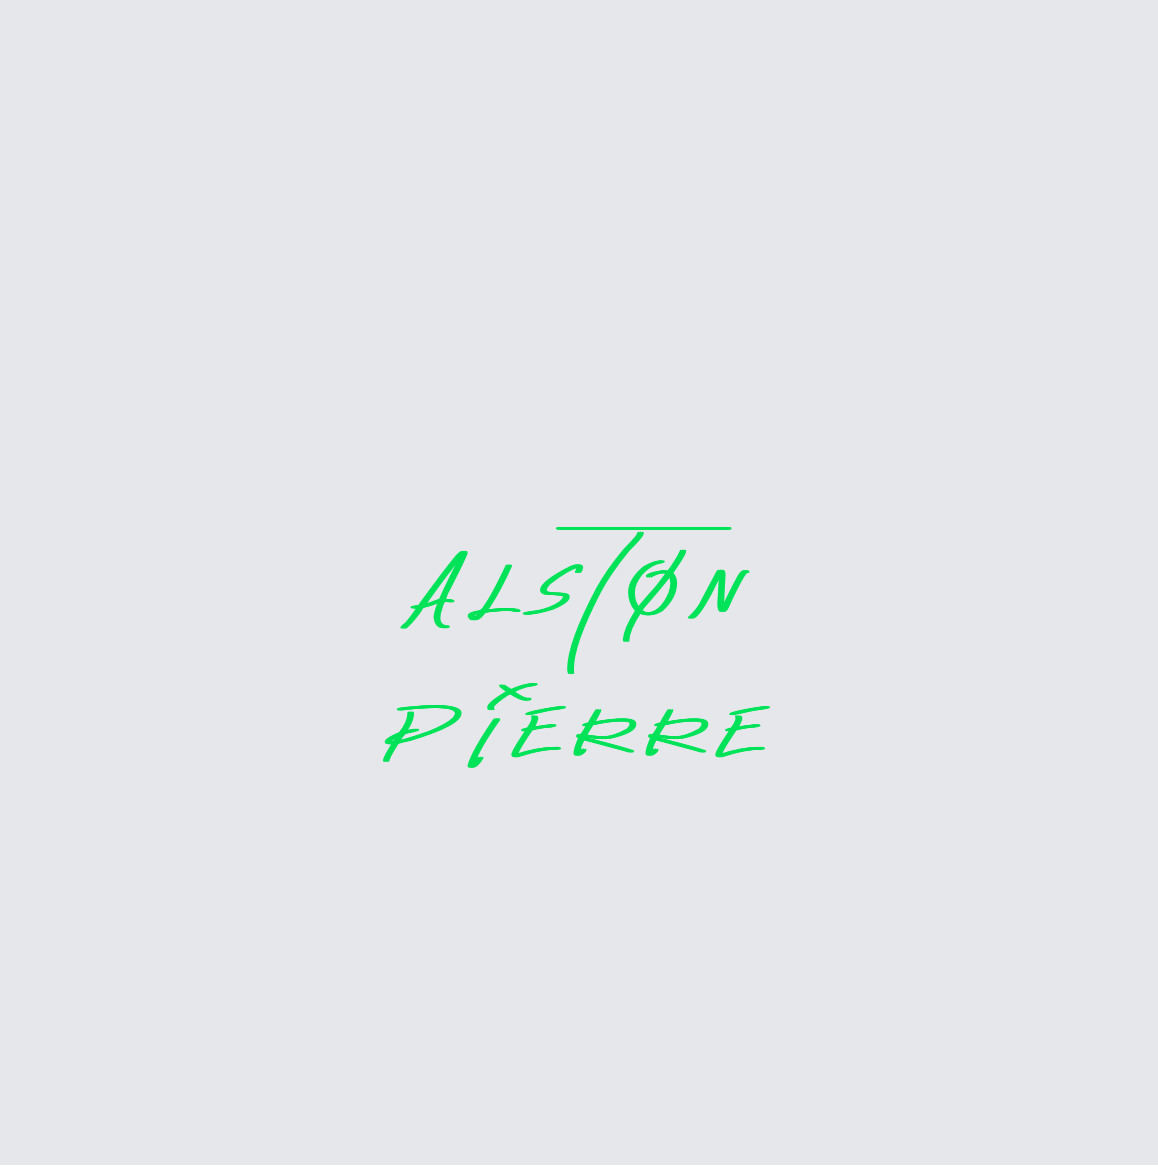 Custom neon sign - AlstonPierre